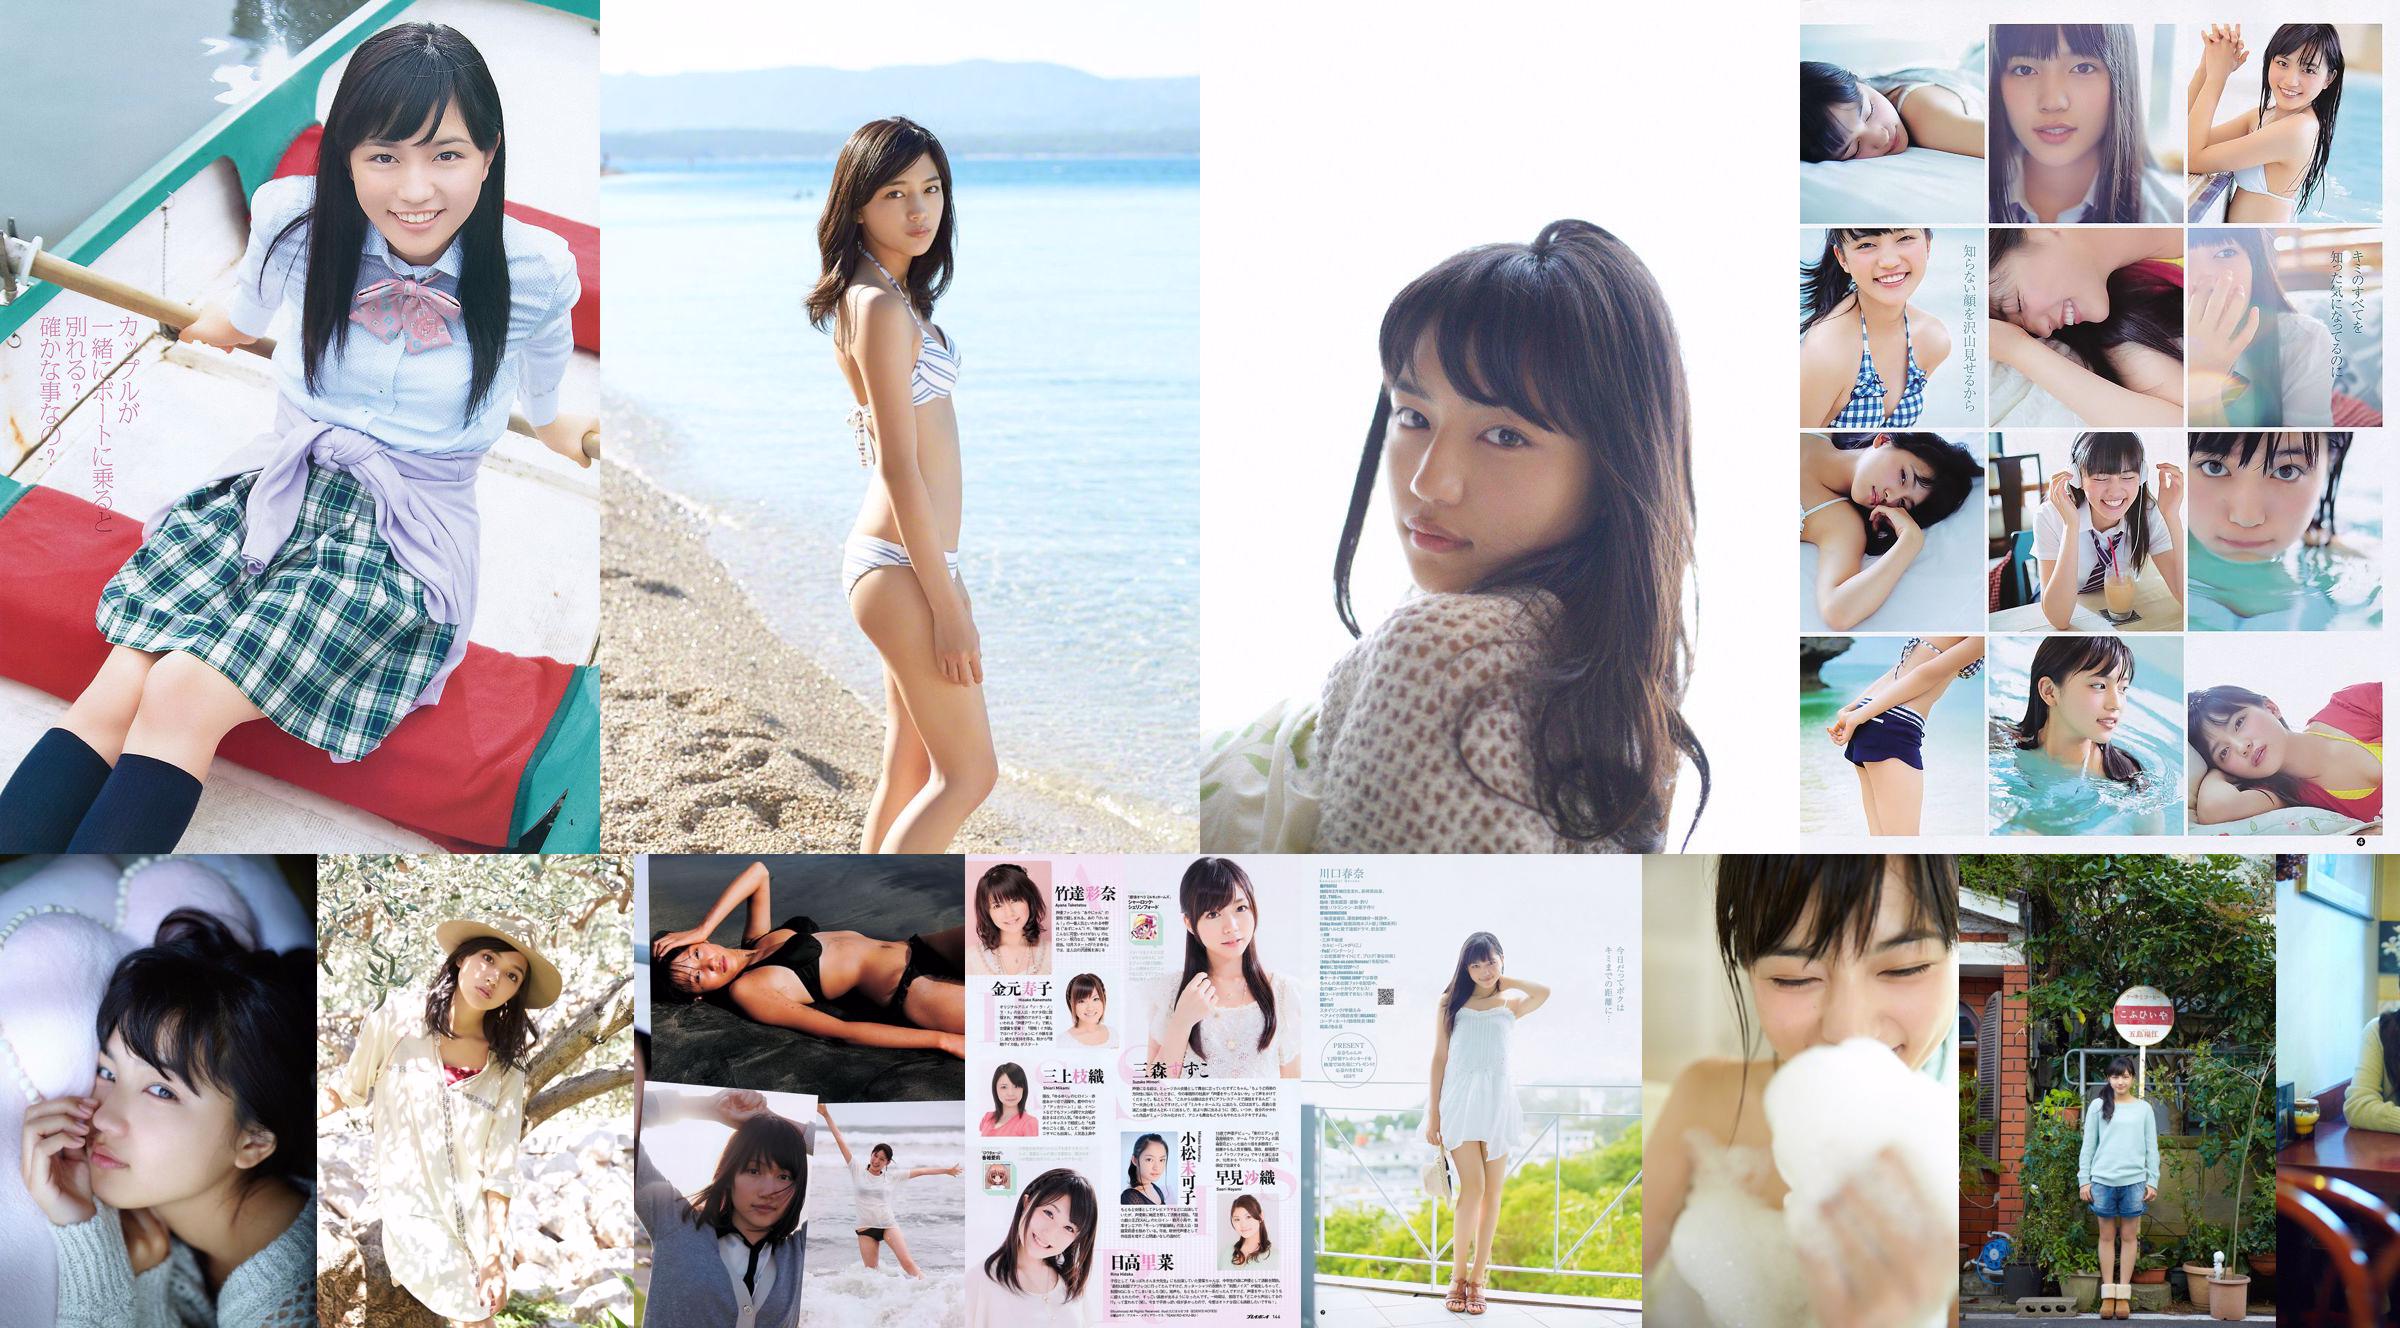 Haruna Kawaguchi Yumi Sugimoto [Weekly Young Jump] 2012 No.18 照片 No.e886de 第1頁